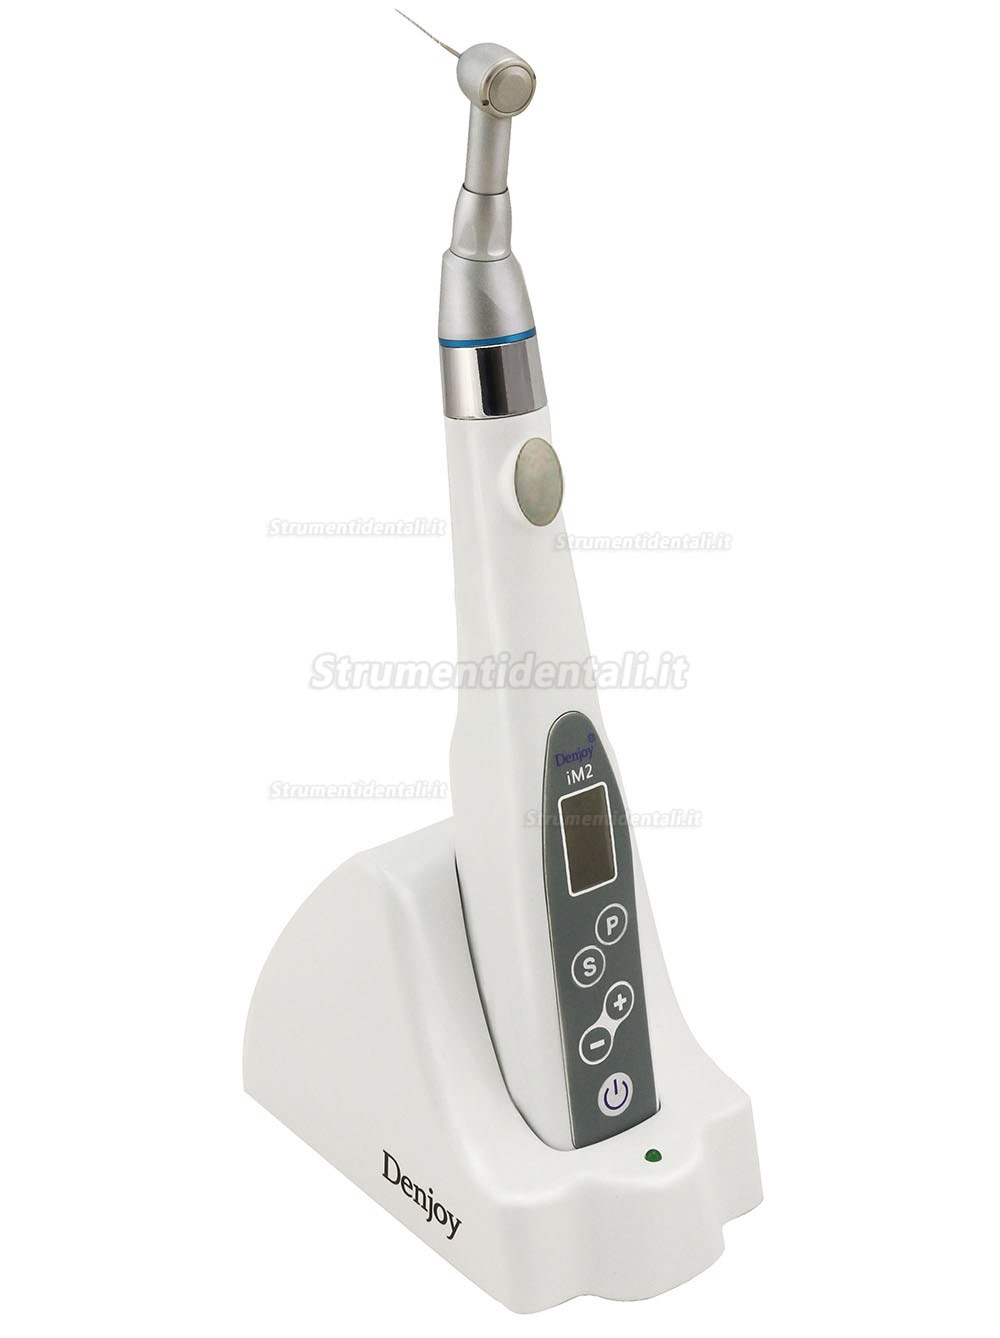 Denjoy® IMATE II micromotore endodontico con contrangolo per lime manuali